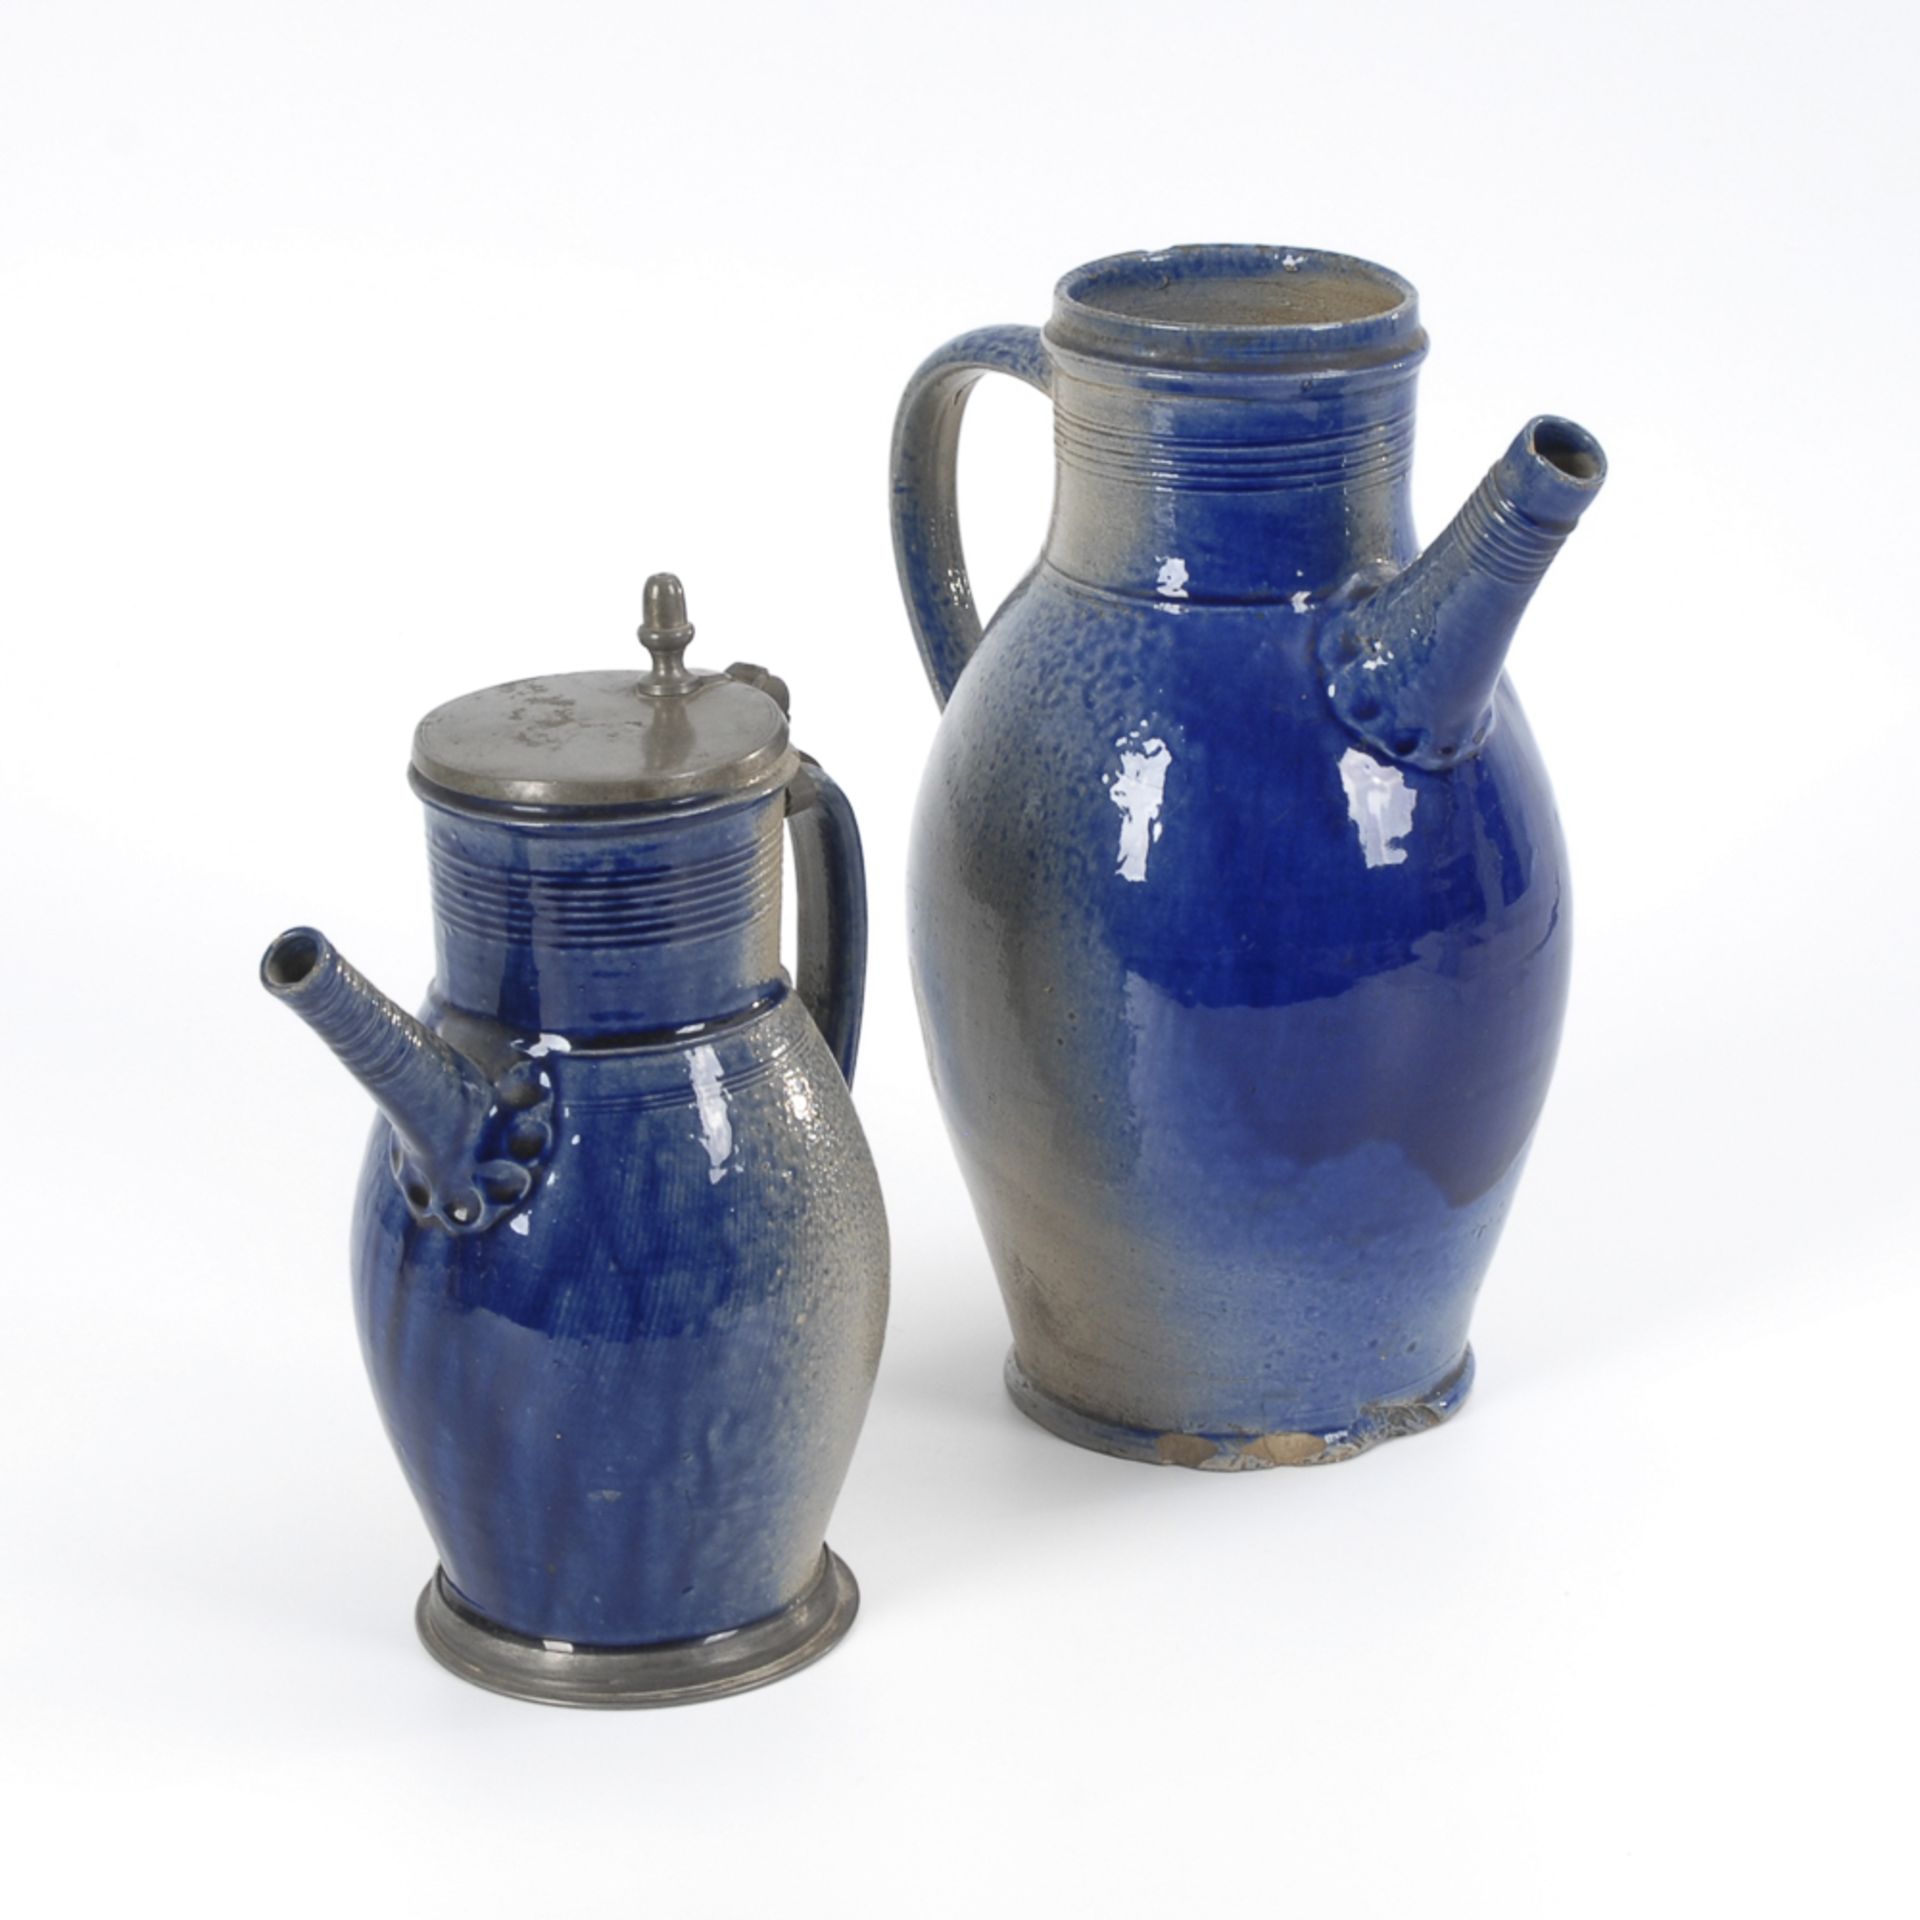 2 Tüllenkannen, BÜRGEL.Um 1800. Graues, salzglasiertes Steinzeug mit blauem Smaltebewurf. H 30,